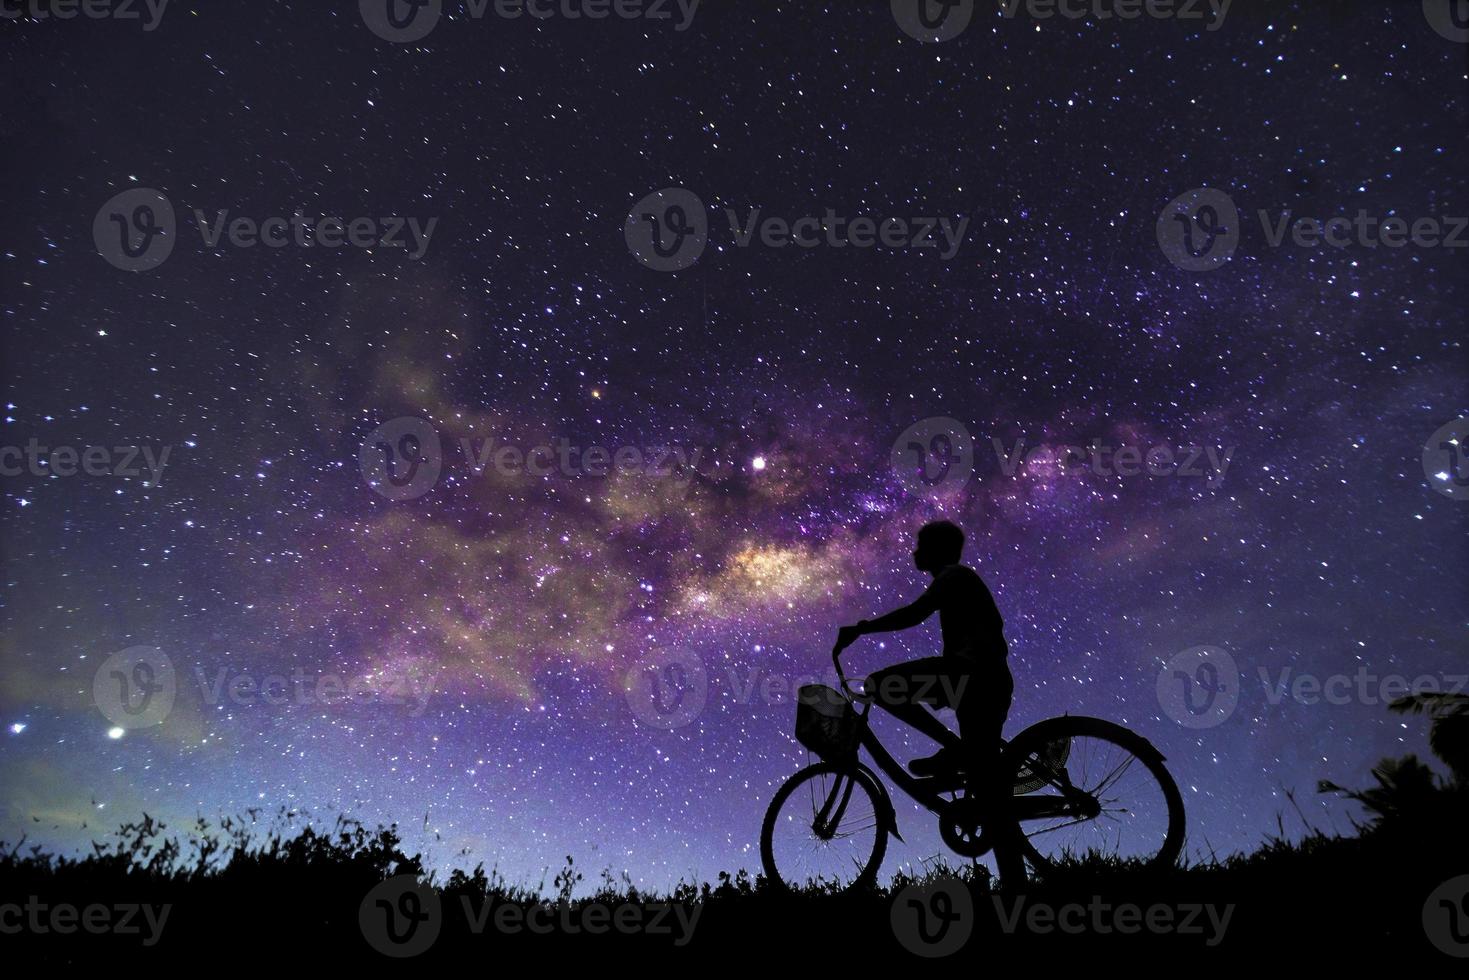 Cenário noturno com a Via Láctea colorida e amarela clara cheia de estrelas no céu no verão fundo do universo bonito do spacenight cenário com a Via Láctea colorida e amarela clara cheia de estrelas no céu no verão Fundo do universo bonito do spac foto